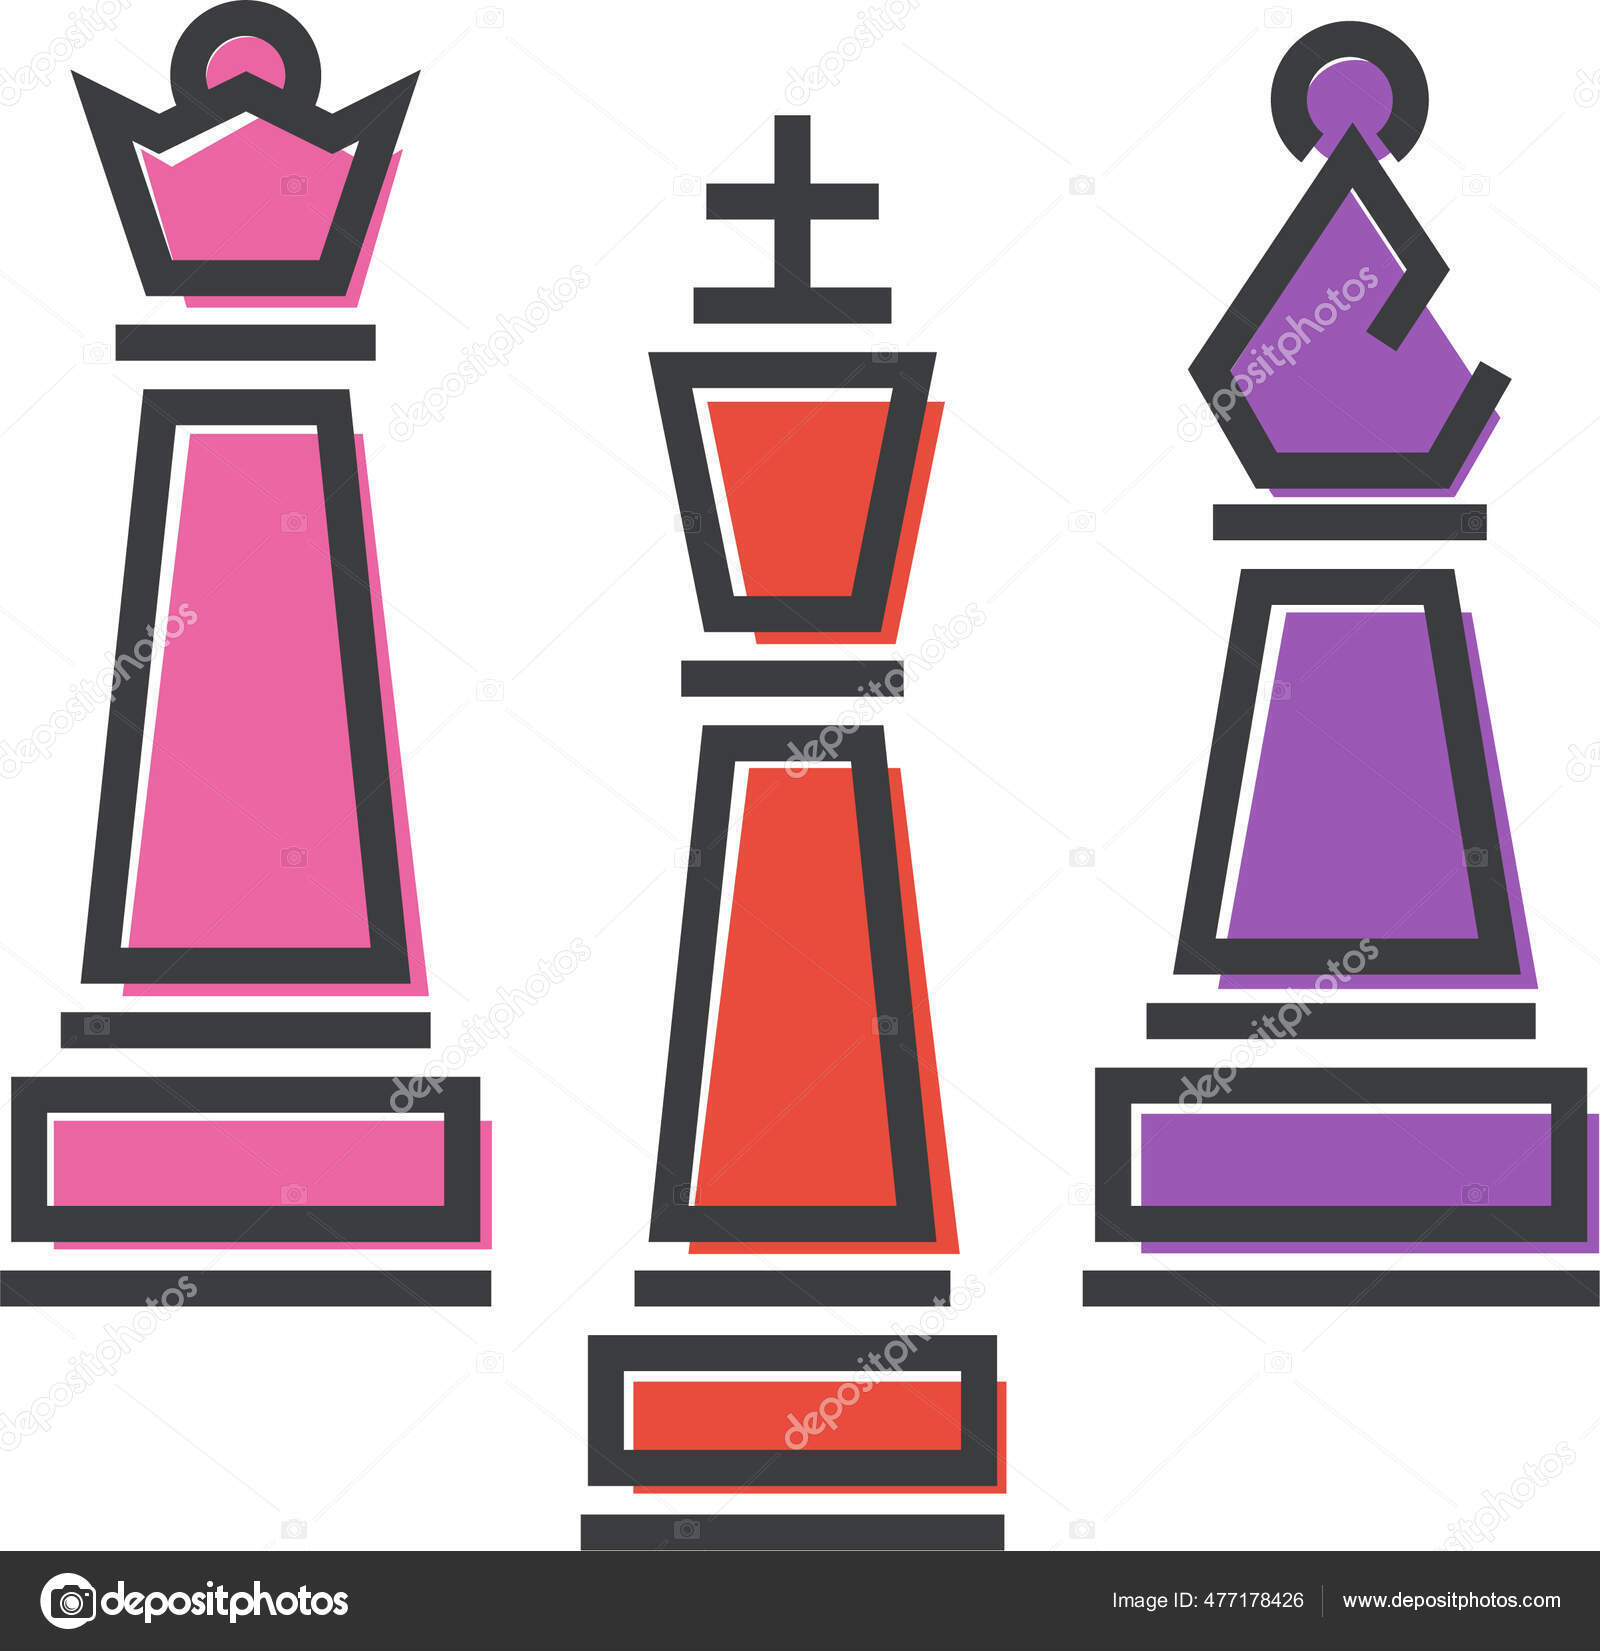 Jogo de xadrez - ícones de computador grátis